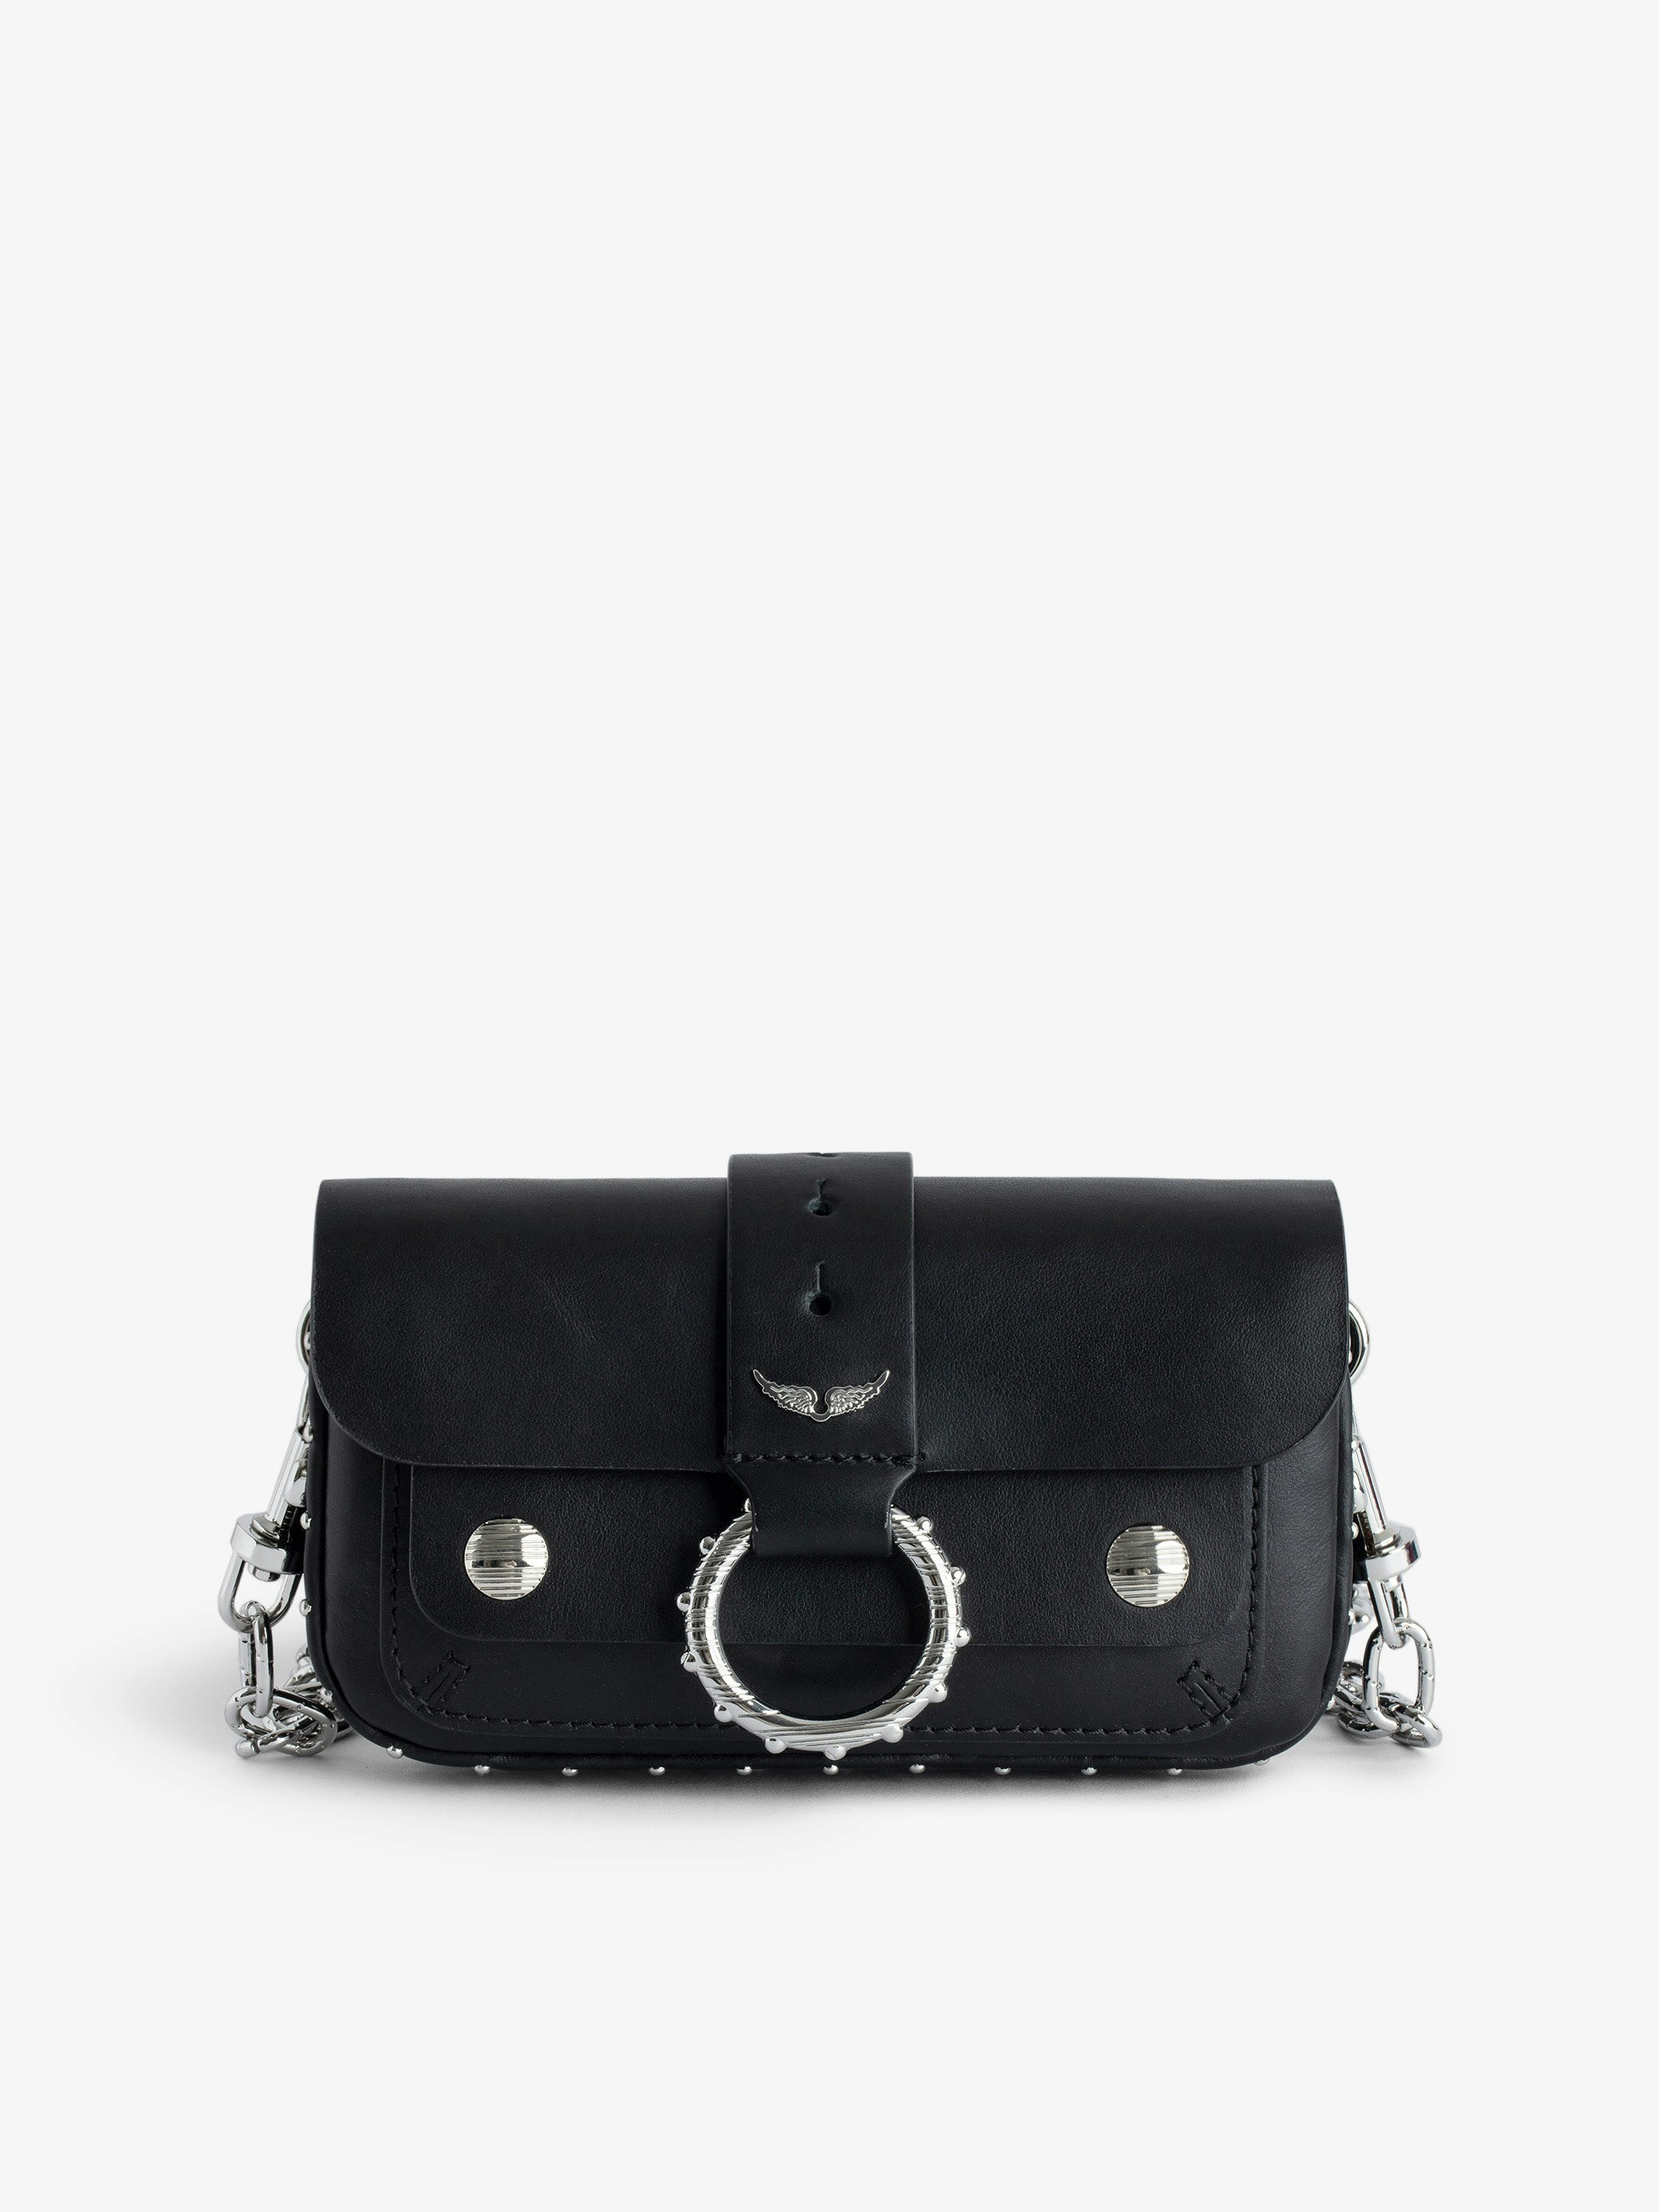 Sac Kate Wallet - Designed by Kate Moss for Zadig&Voltaire. 
Mini sac en cuir lisse noir à anneau et chaîne en métal.